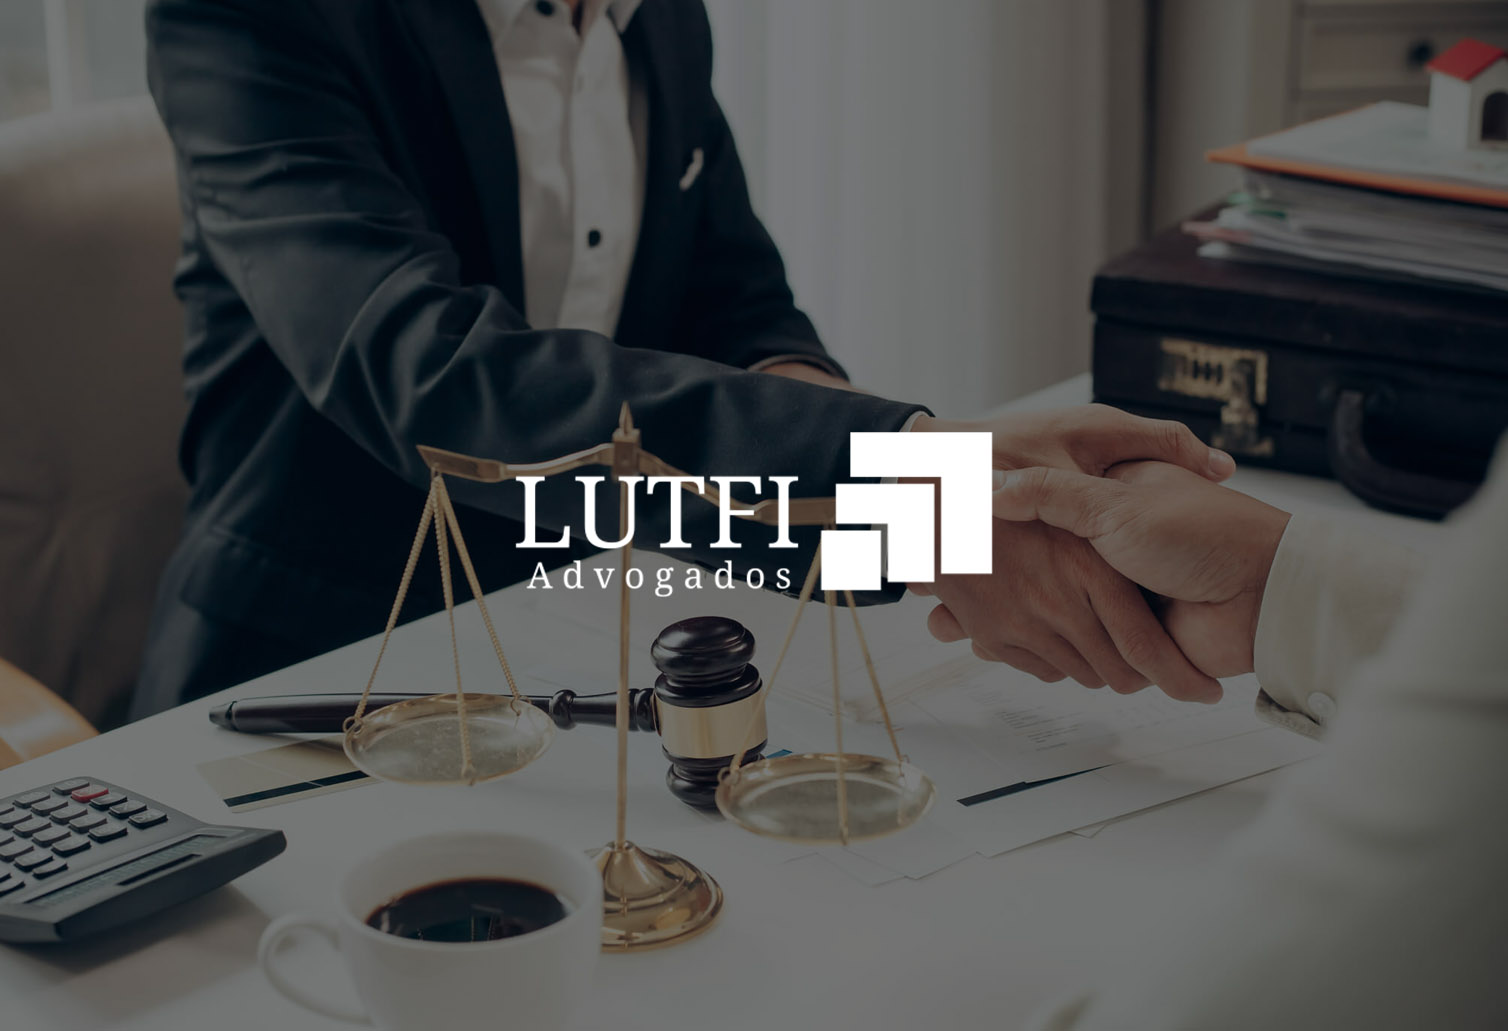 Lutfi Advogados